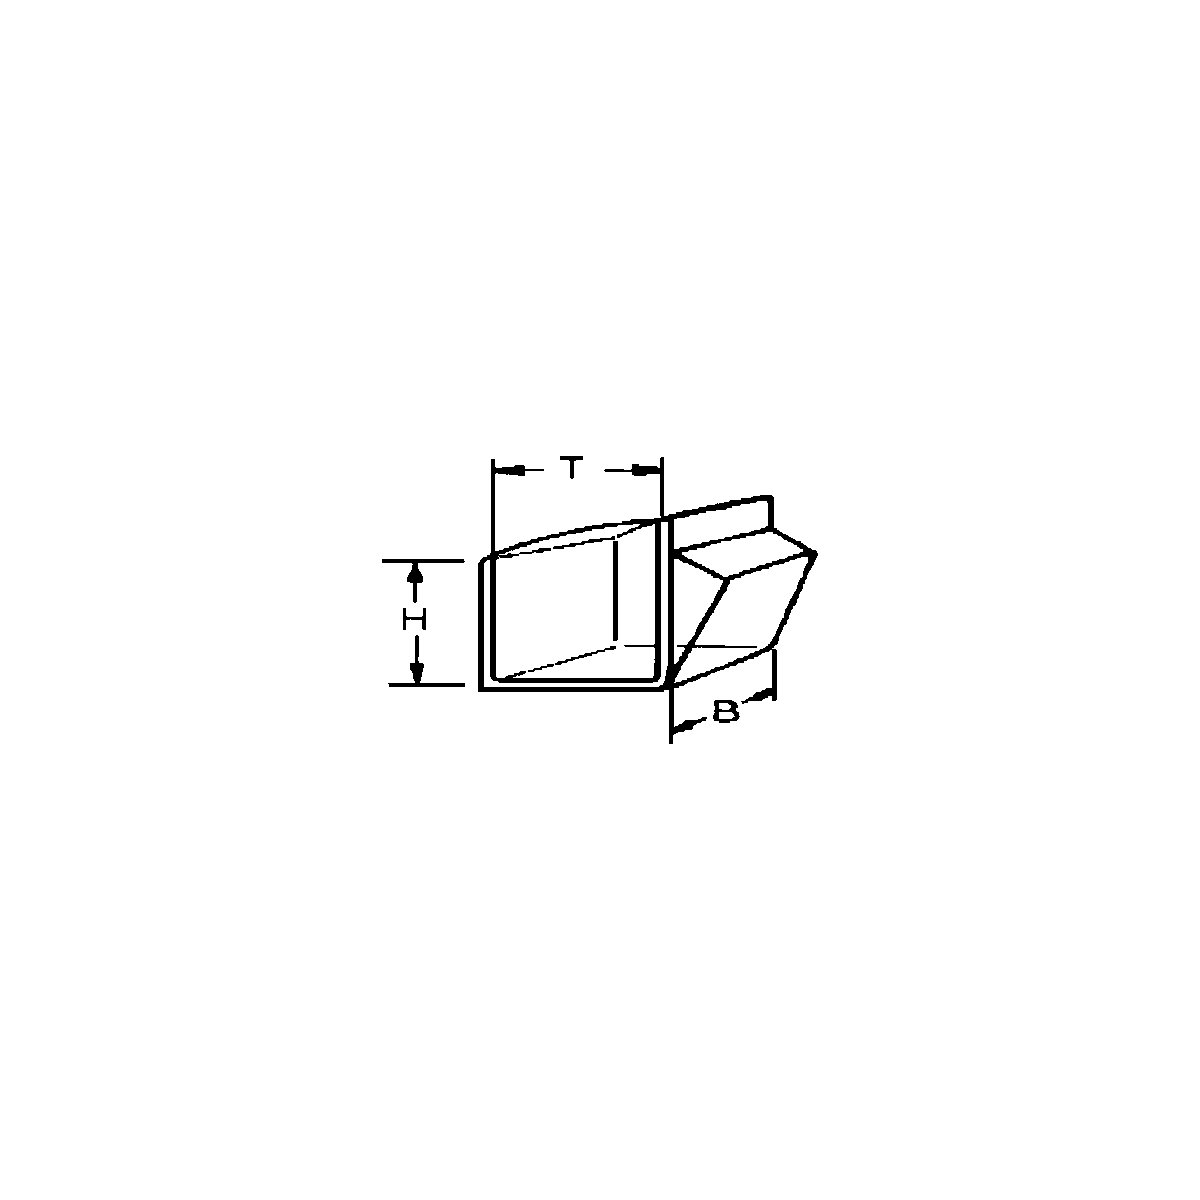 Sistem de depozitare cu cutie cu clapetă (Imagine produs 11)-10